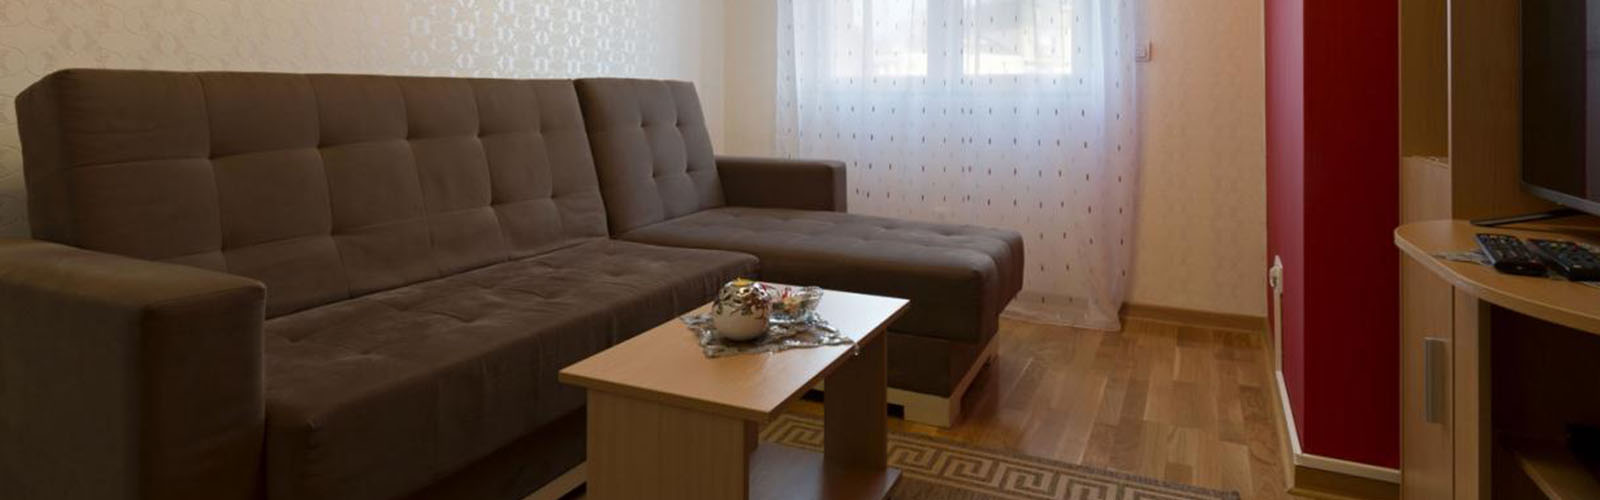 Concierge Belgrade | Apartman Delta Top 101